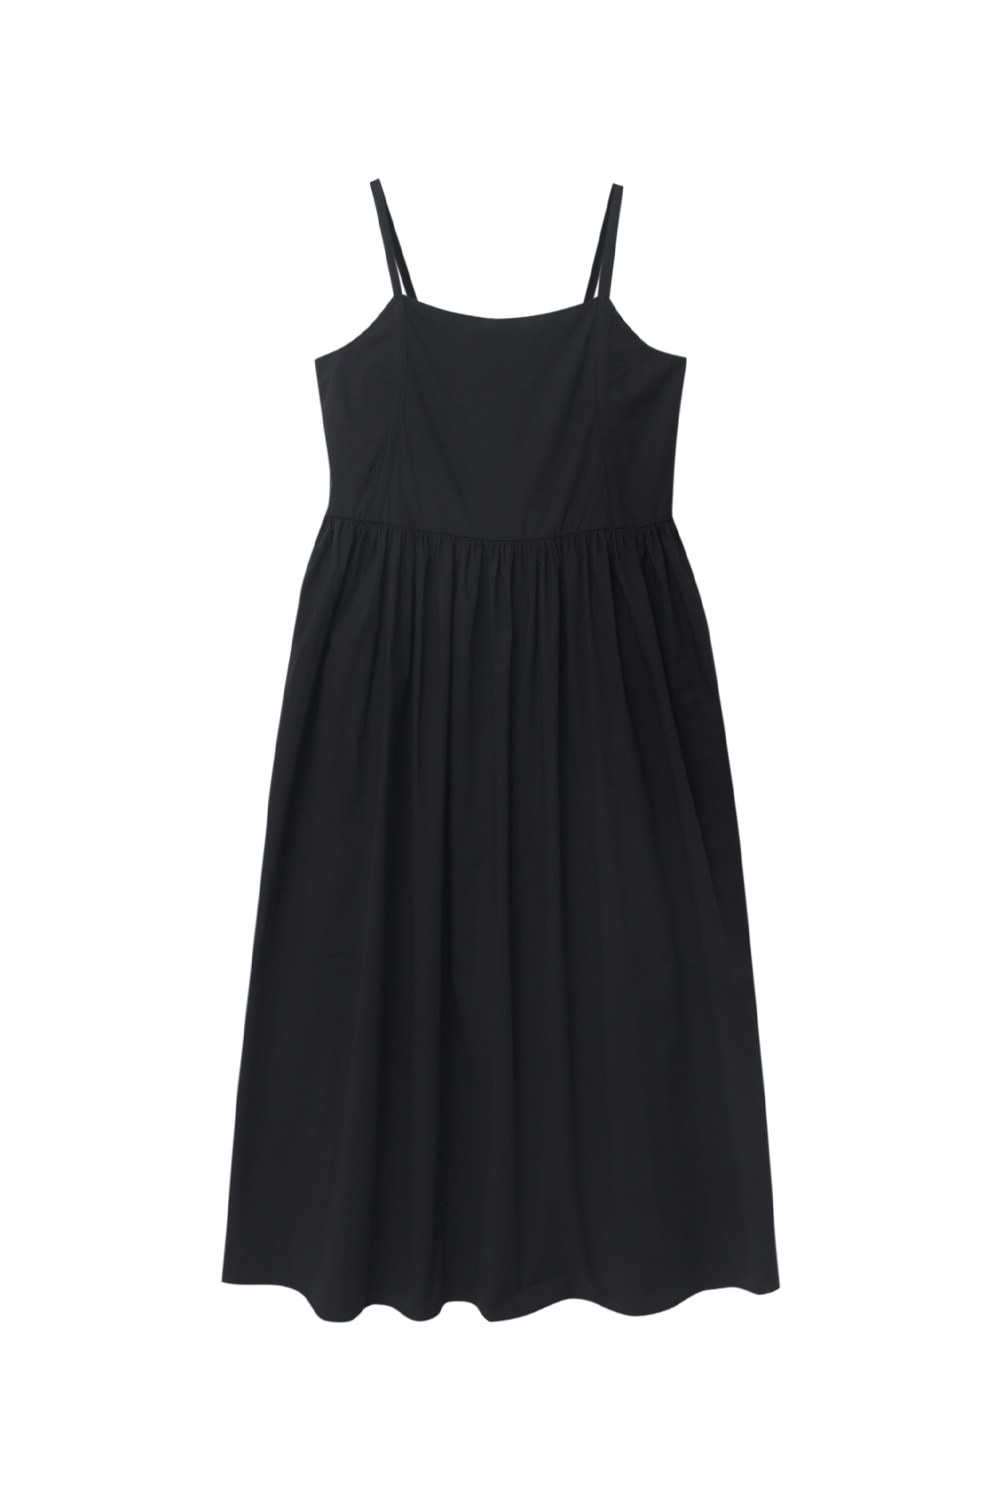 Bustier Dress (Black)